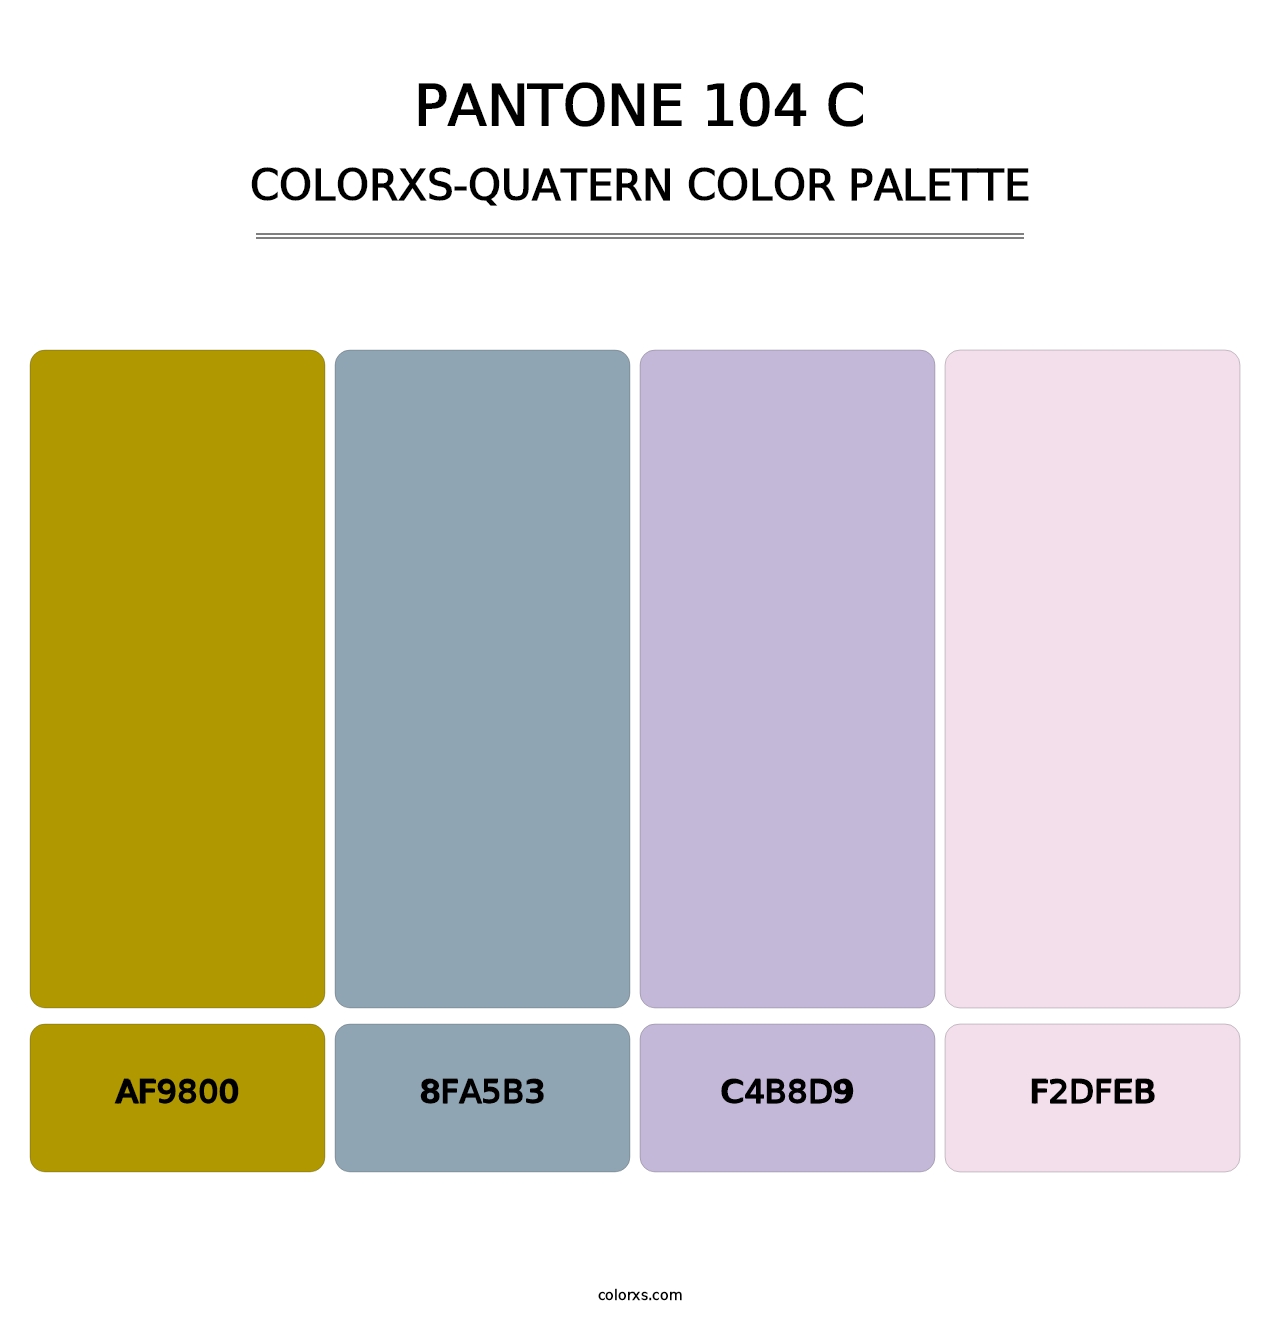 PANTONE 104 C - Colorxs Quatern Palette